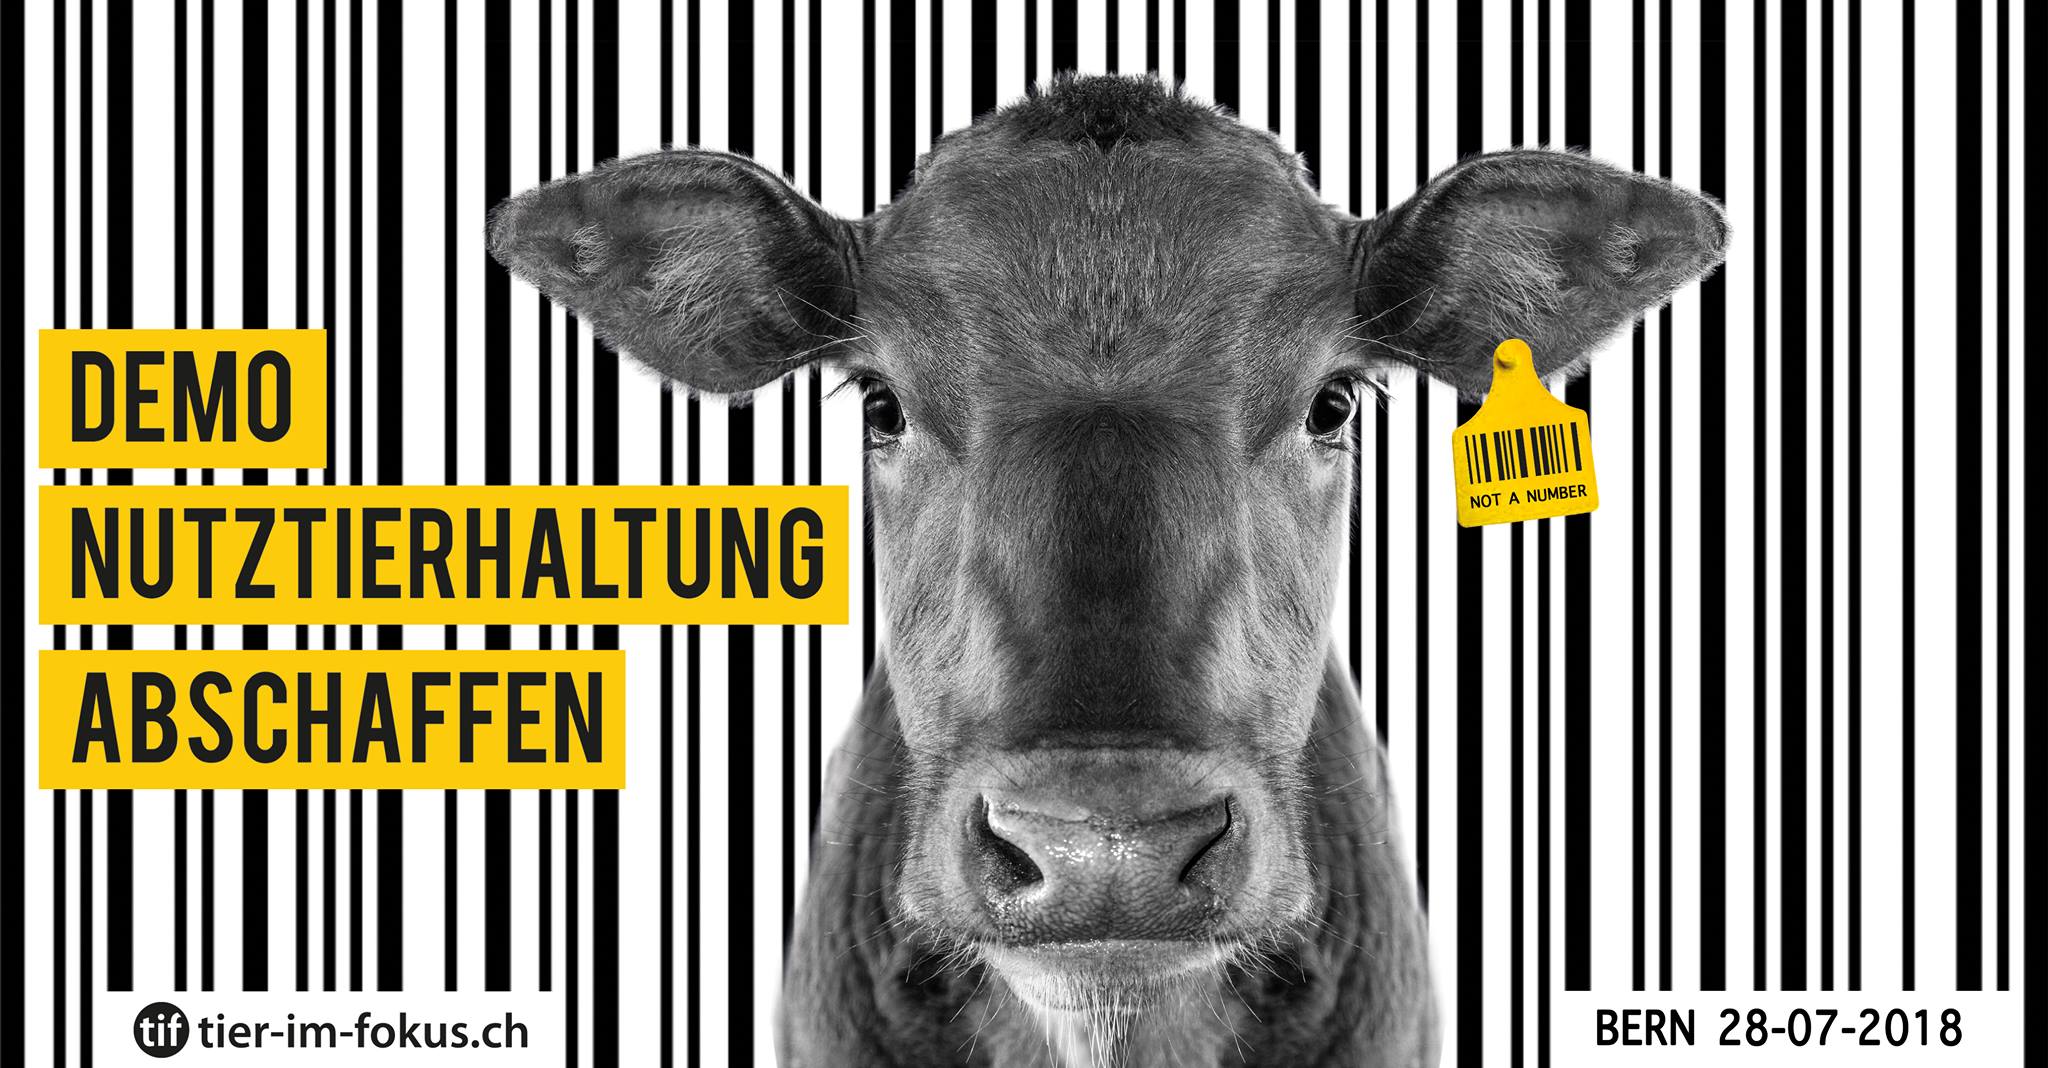 Demo Nutztierhaltung abschaffen Bern 2018